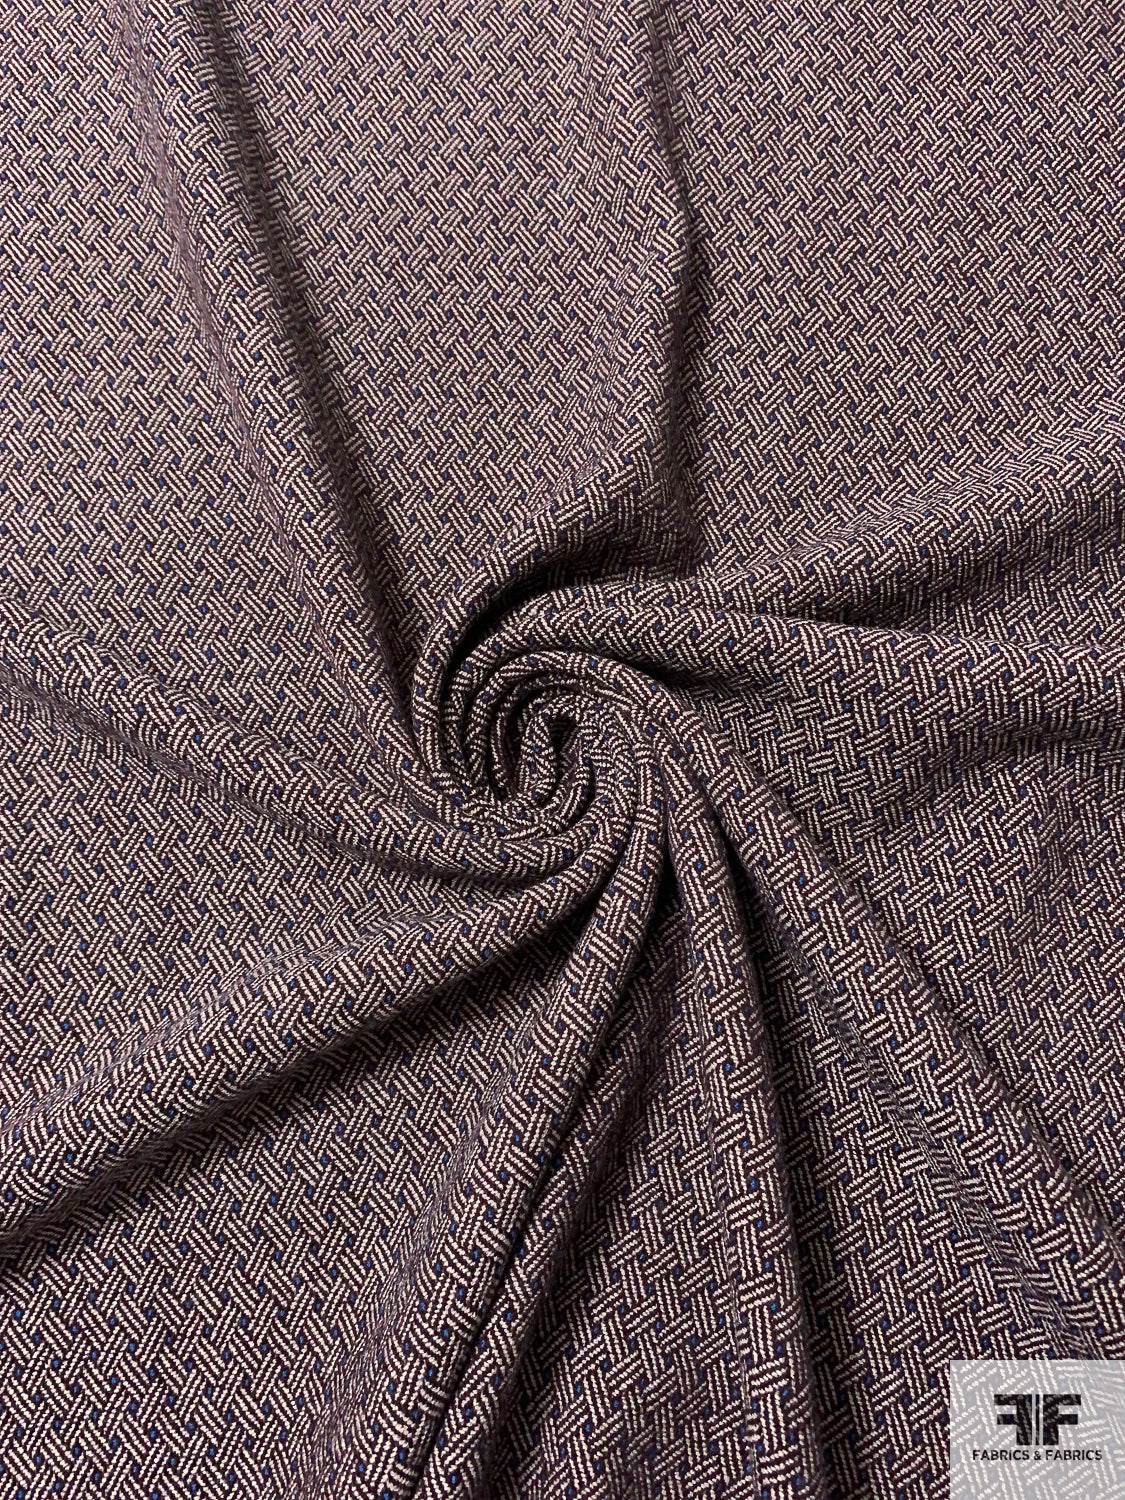 Italian Diagonal Basketweave Wool Jacket Weight - Maroon / Beige / Blue